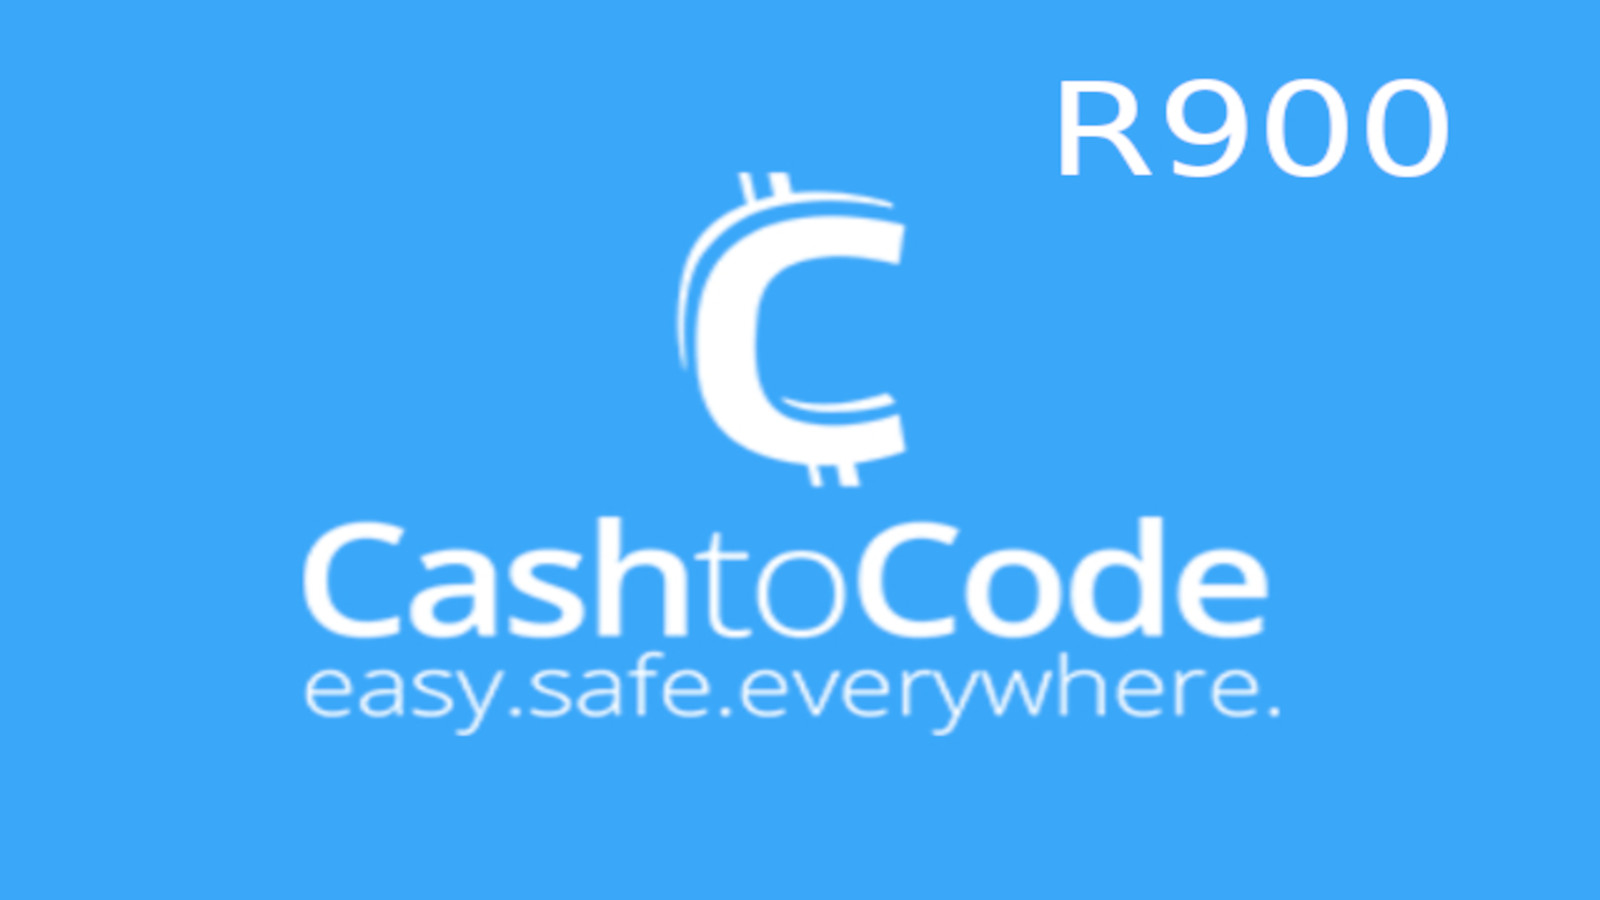 CashtoCode R900 Gift Card ZA 54.46$